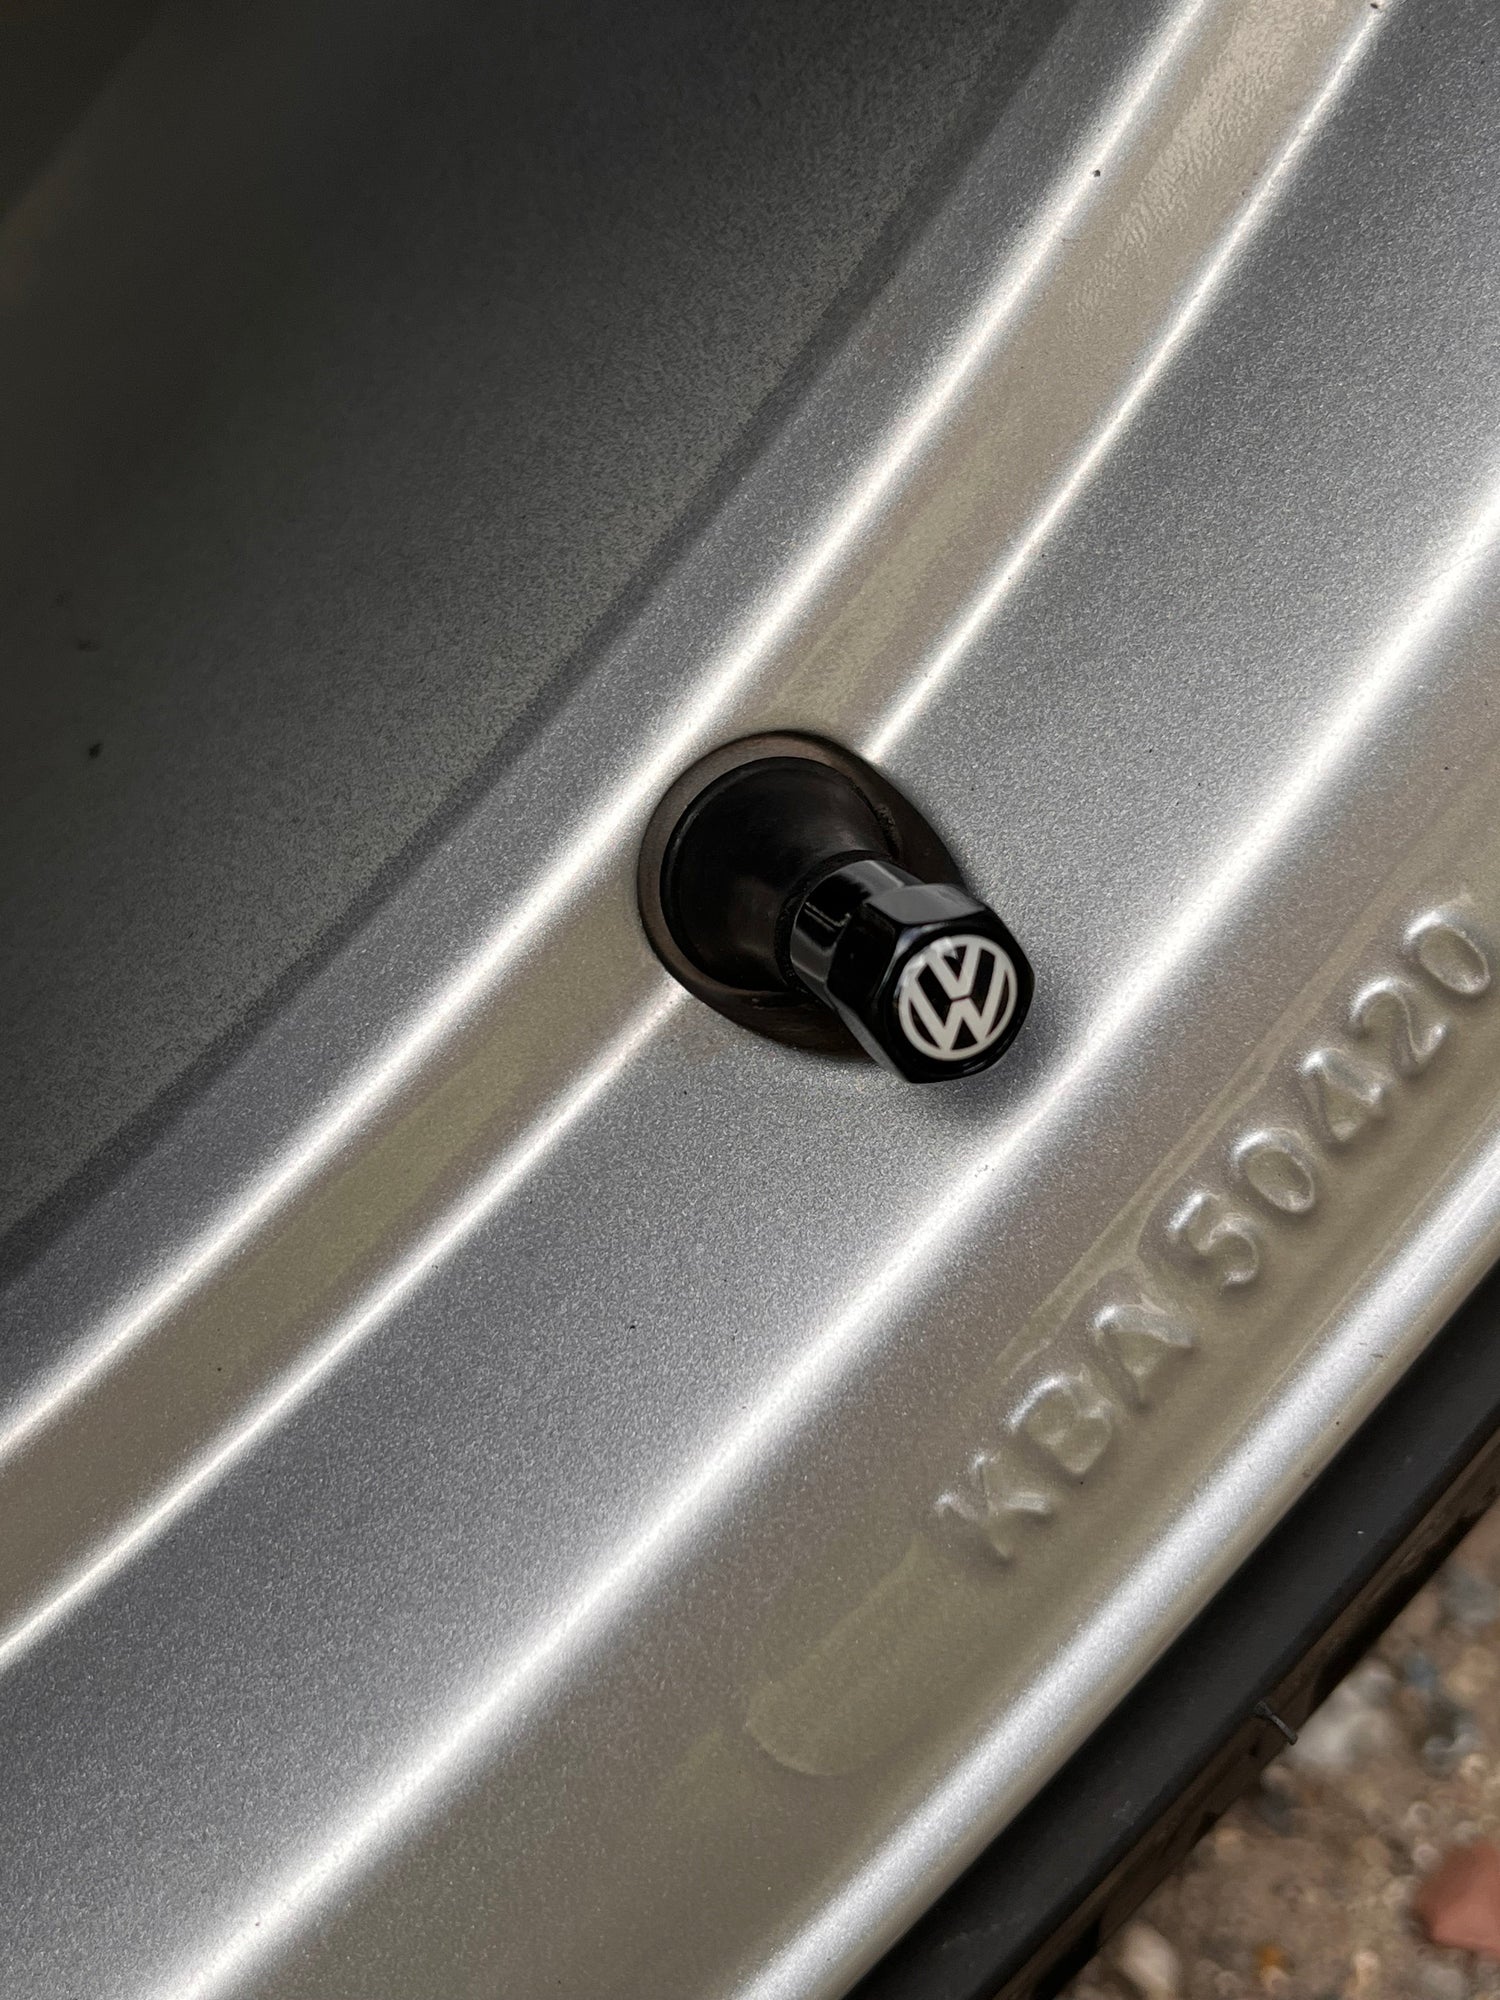 Volkswagen Ventilhætter, Sort, sæt med 4 stk. - BilligStyling